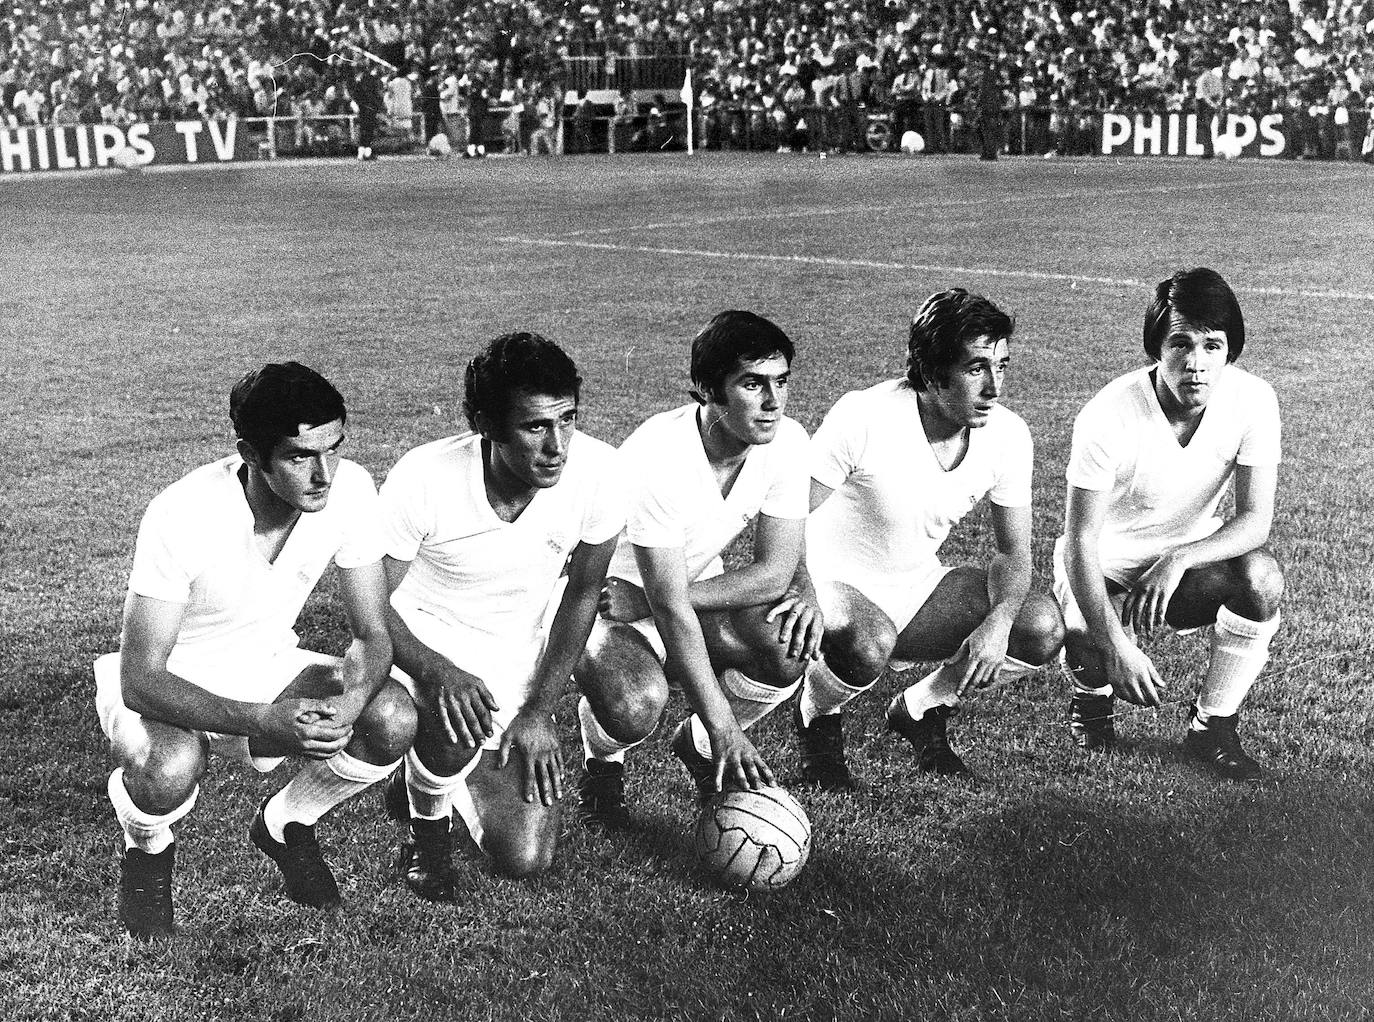 La delantera del Real Madrid en 1971 formada por Aguilar, Amancio Amaro, Santillana, Velázquez y Anzarda.